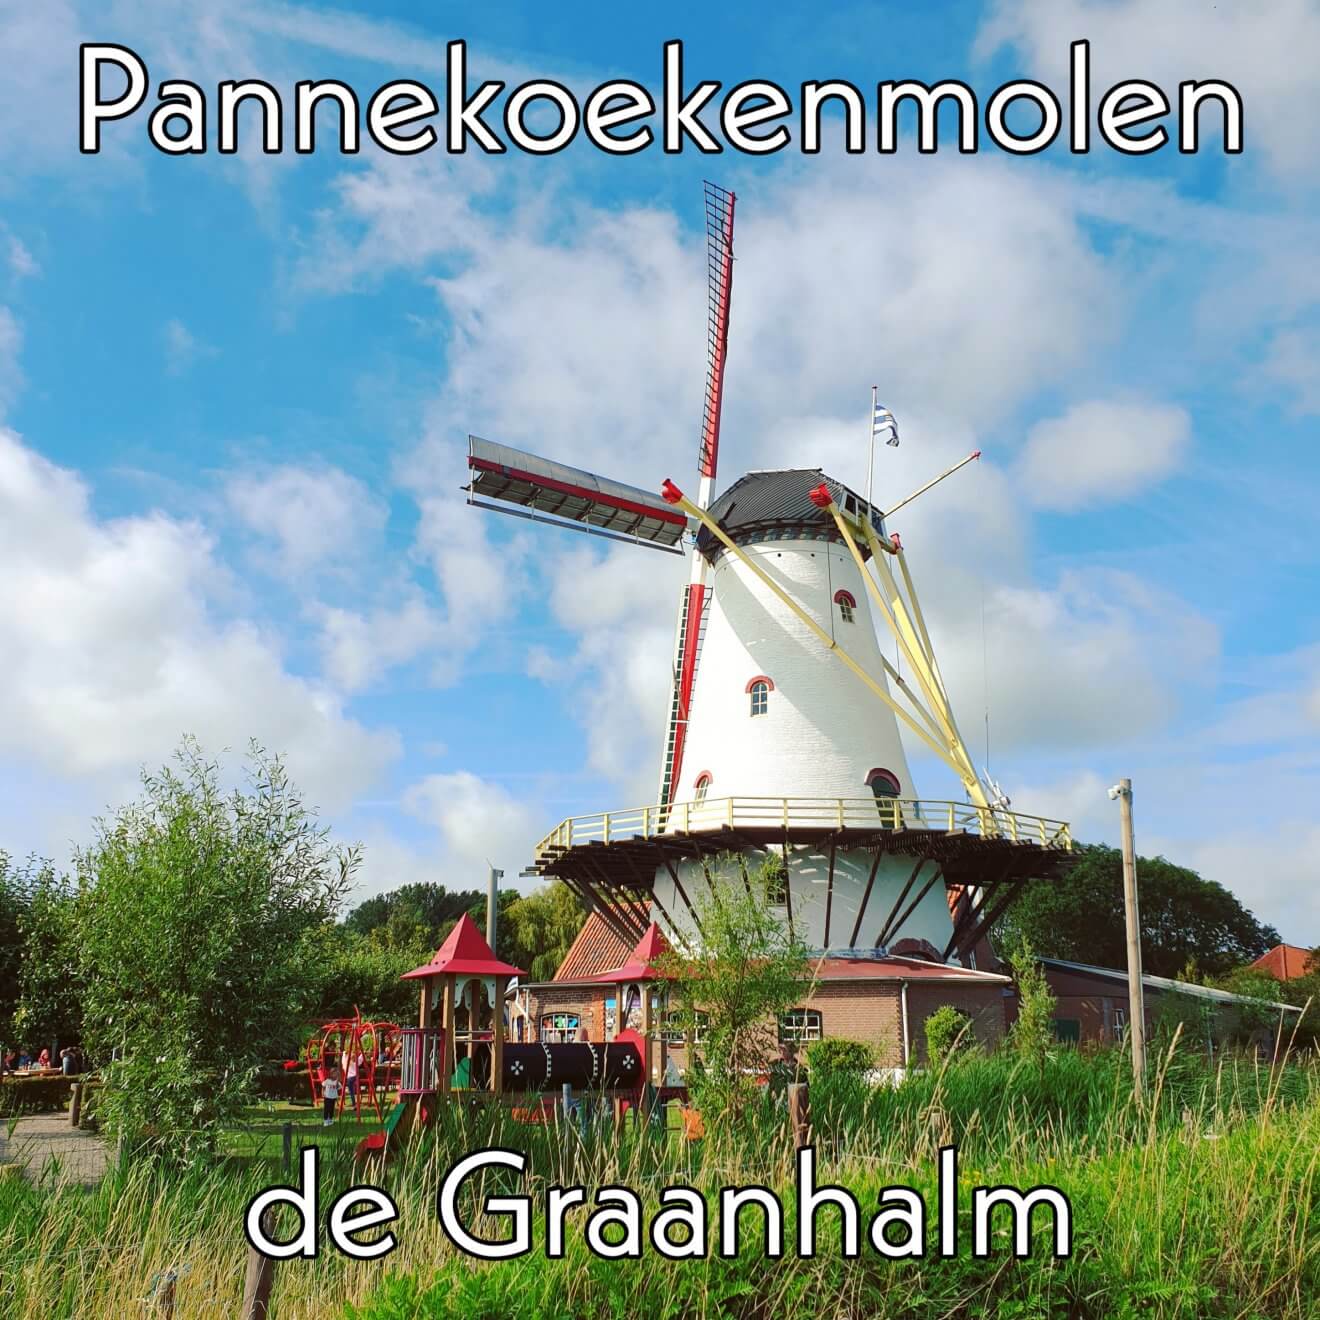 Kindvriendelijk restaurant Schouwen-Duiveland: Pannekoekenmolen de Graanhalm in Burgh Haamstede